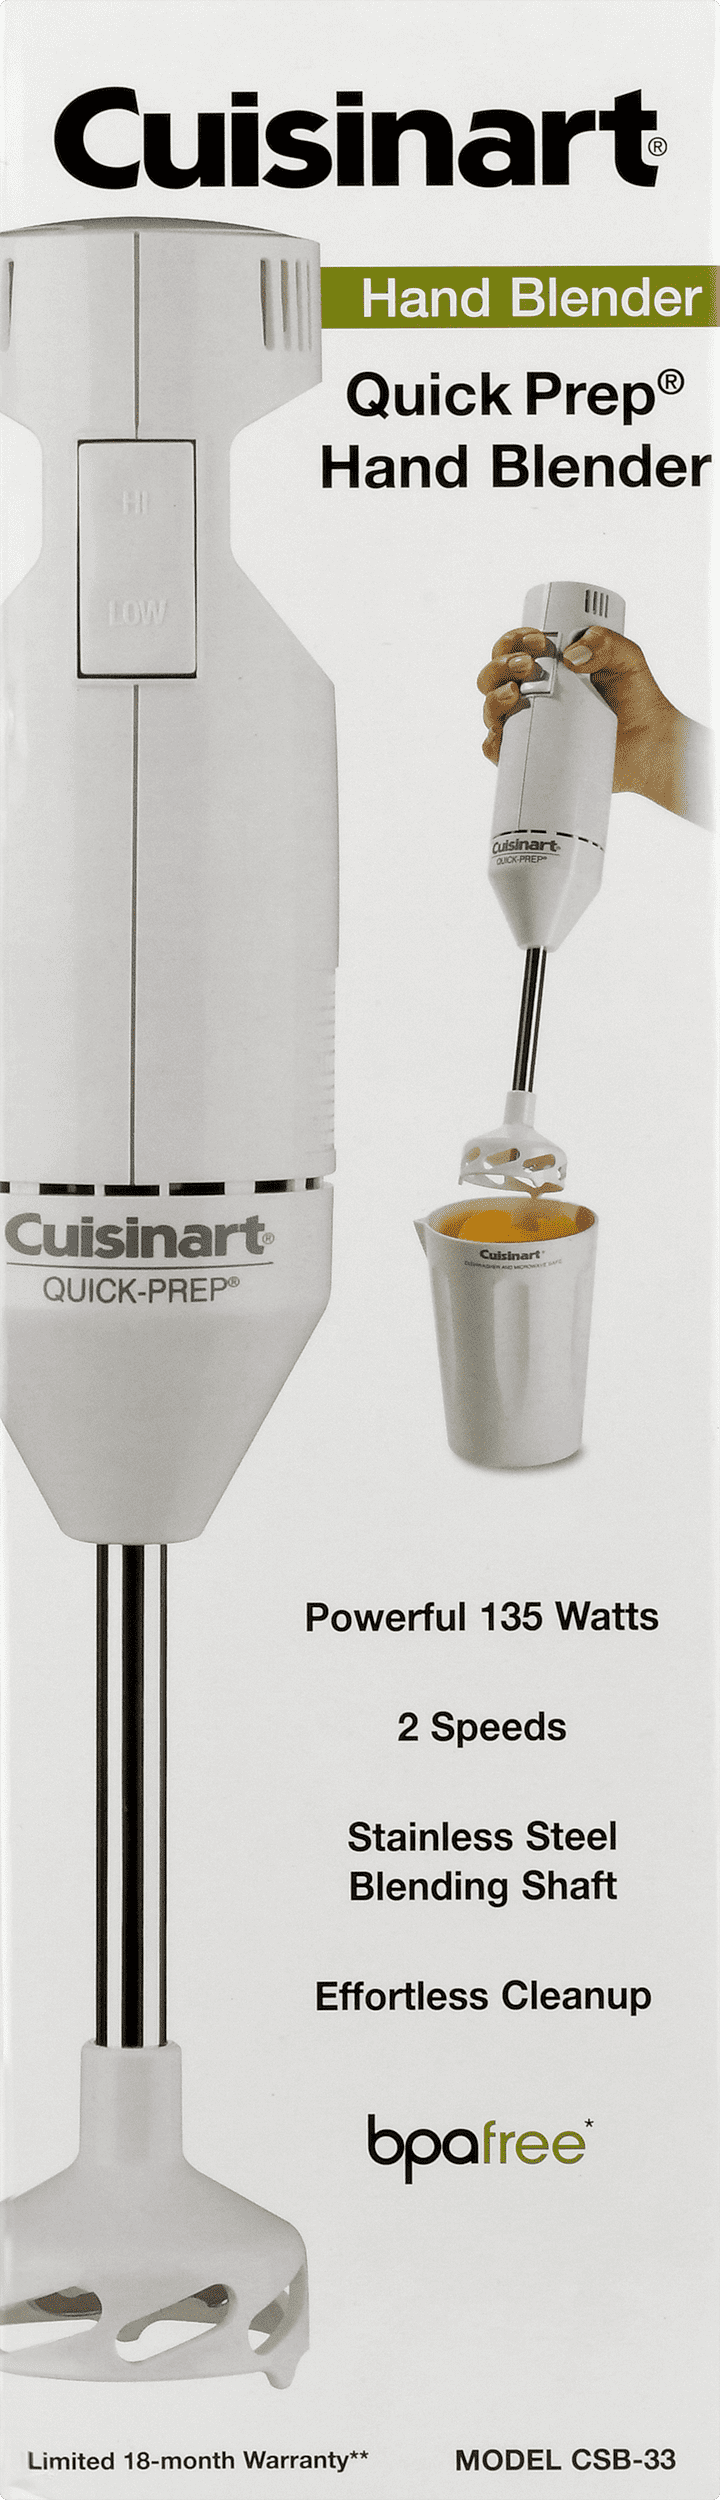 Cuisinart Quick-Prep Single-Speed Hand Blender - White - CHB-60TG